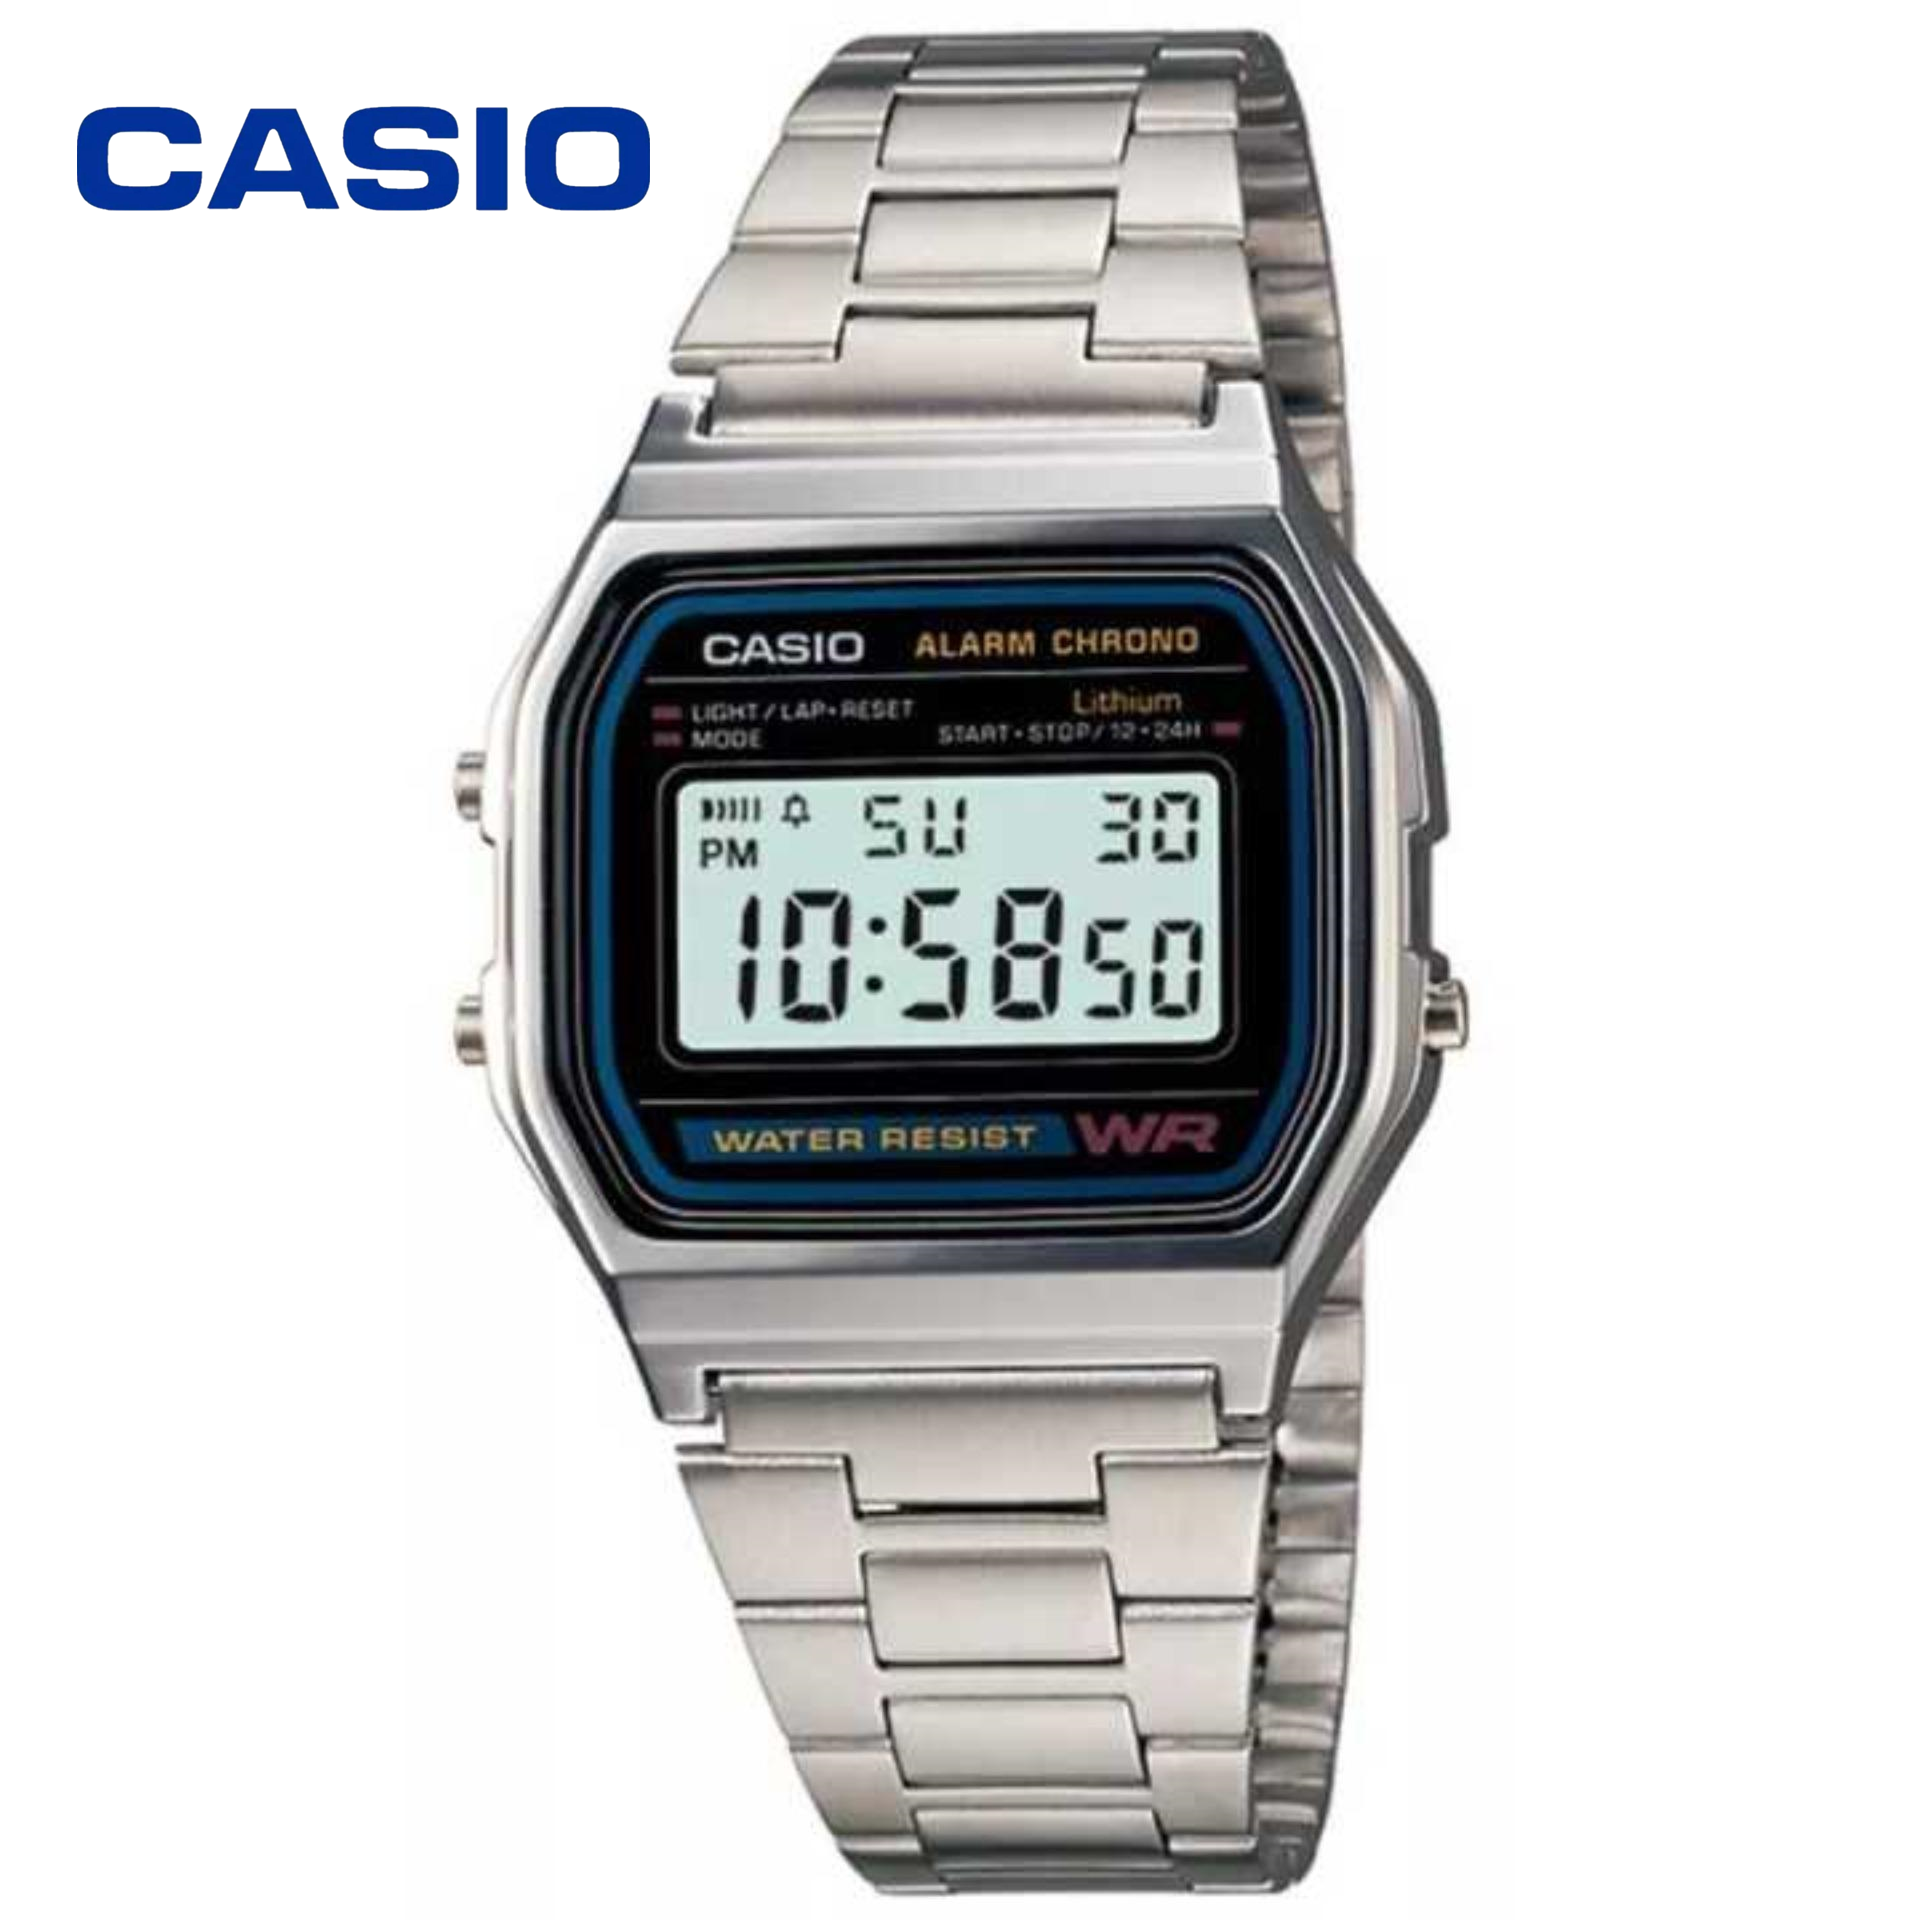 Casio Digital Classic นาฬิกาข้อมือสุภาพบุรุษ สีเงิน สายสแตนเลส รุ่น A158WA-1DF